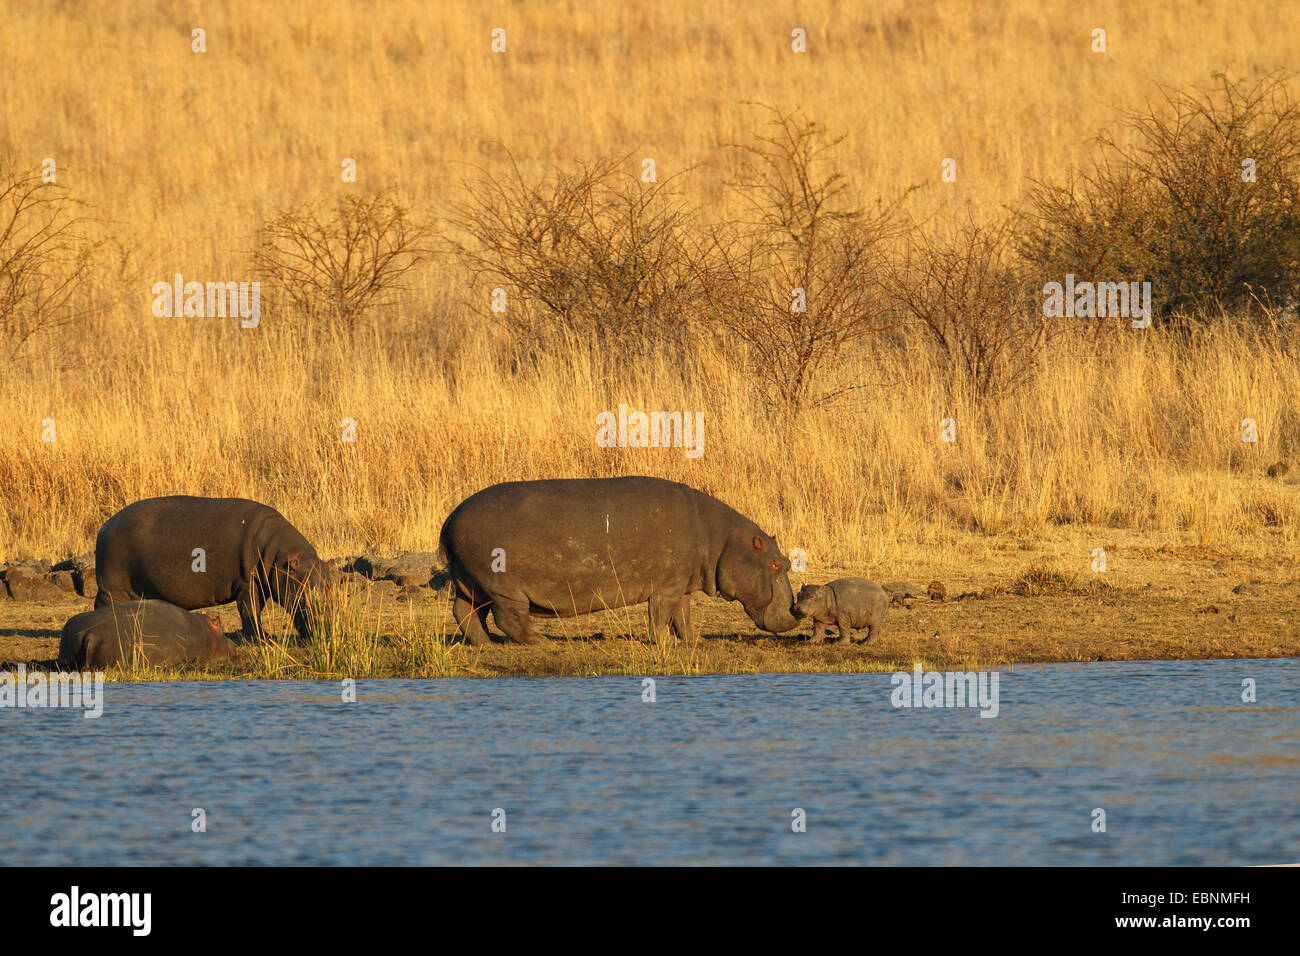 Nilpferd, Nilpferd, gemeinsame Flusspferd (Hippopotamus Amphibius), Weibchen mit einem kleinen Jungen am Seeufer, Südafrika, Pilanesberg National Park Stockfoto